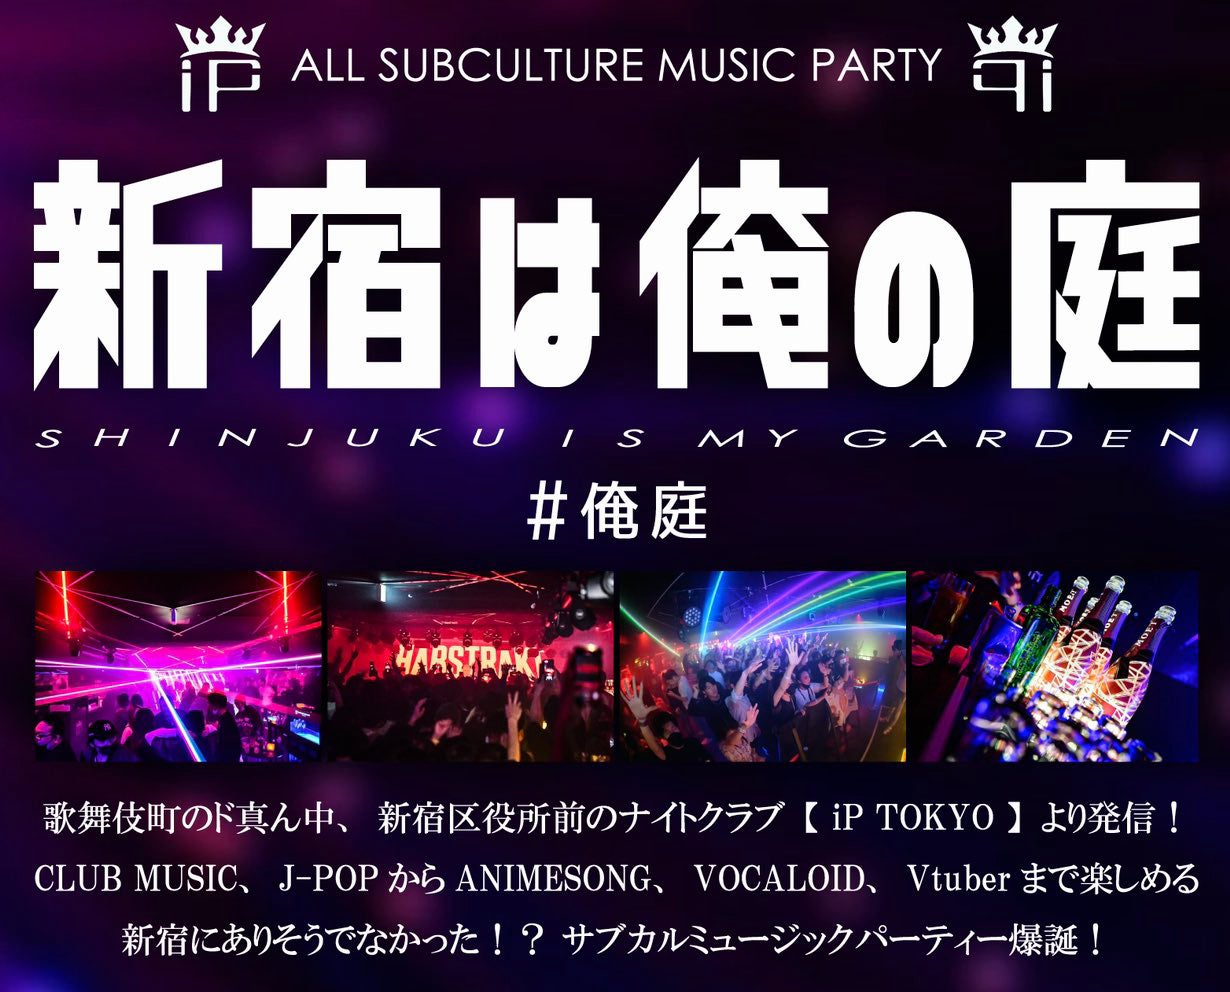 歌舞伎町のド真ん中で「ありそうでなかったサブカルミュージックパーティー」が開催！初開催DJイベント『新宿は俺の庭 Vol.1』に、METEORA st.のぽにょ皇子、ユリコタイガー、りさまるが出演！